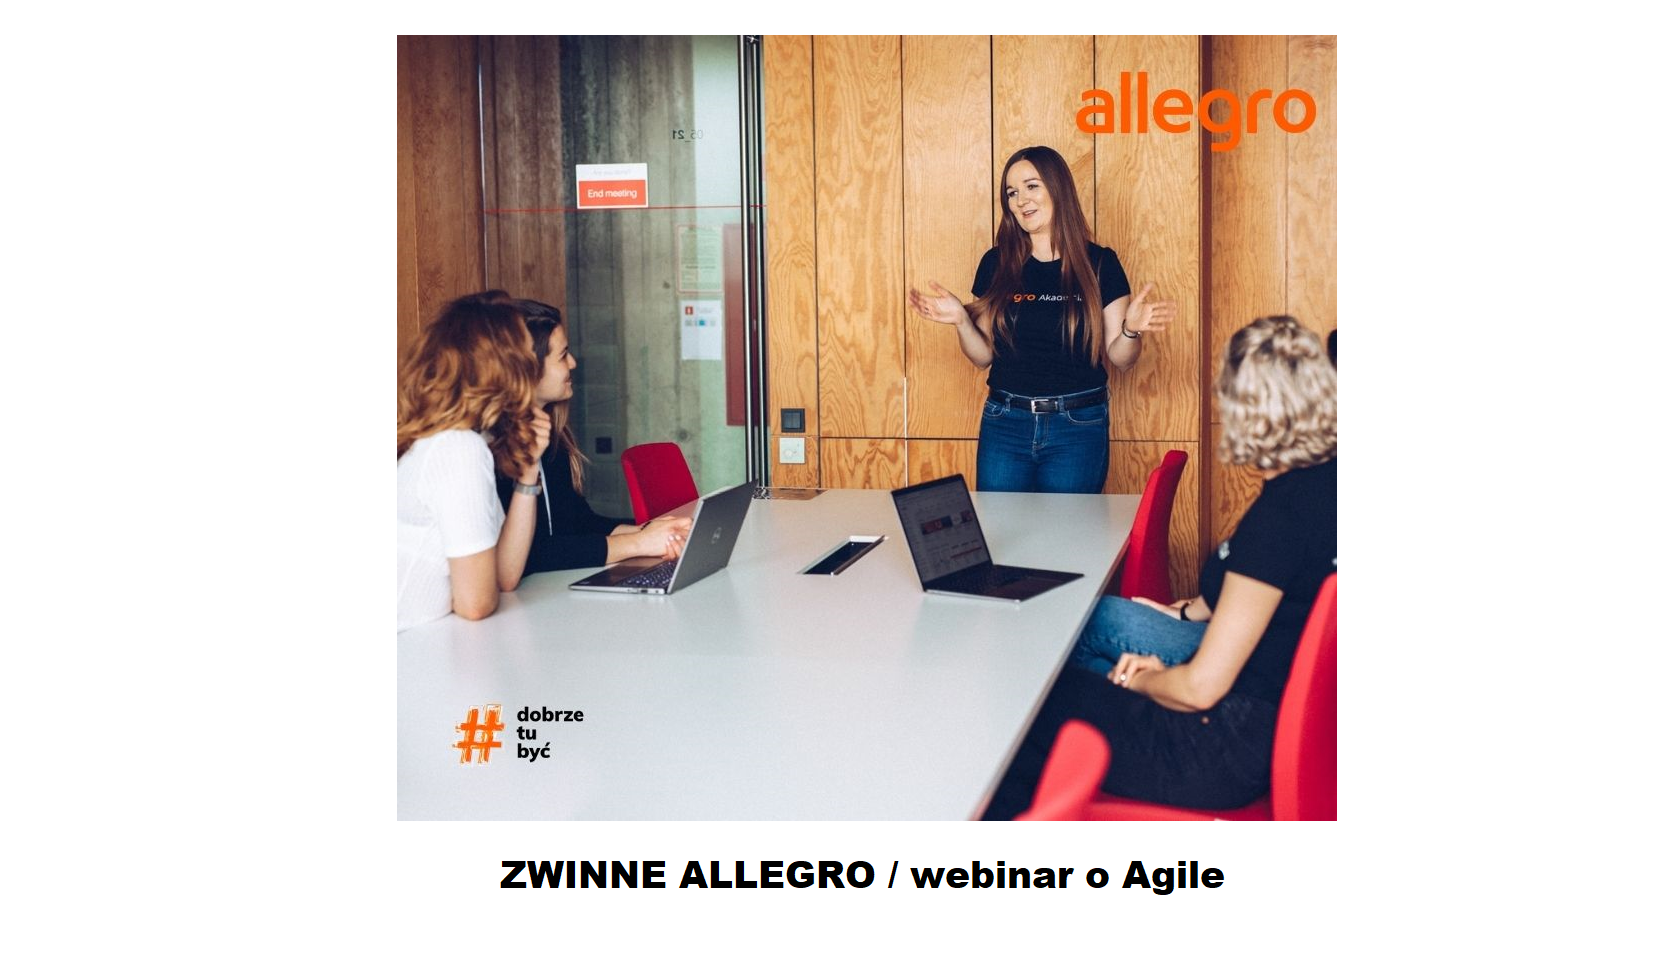 Zwinne Allegro (webinar o Agile) 